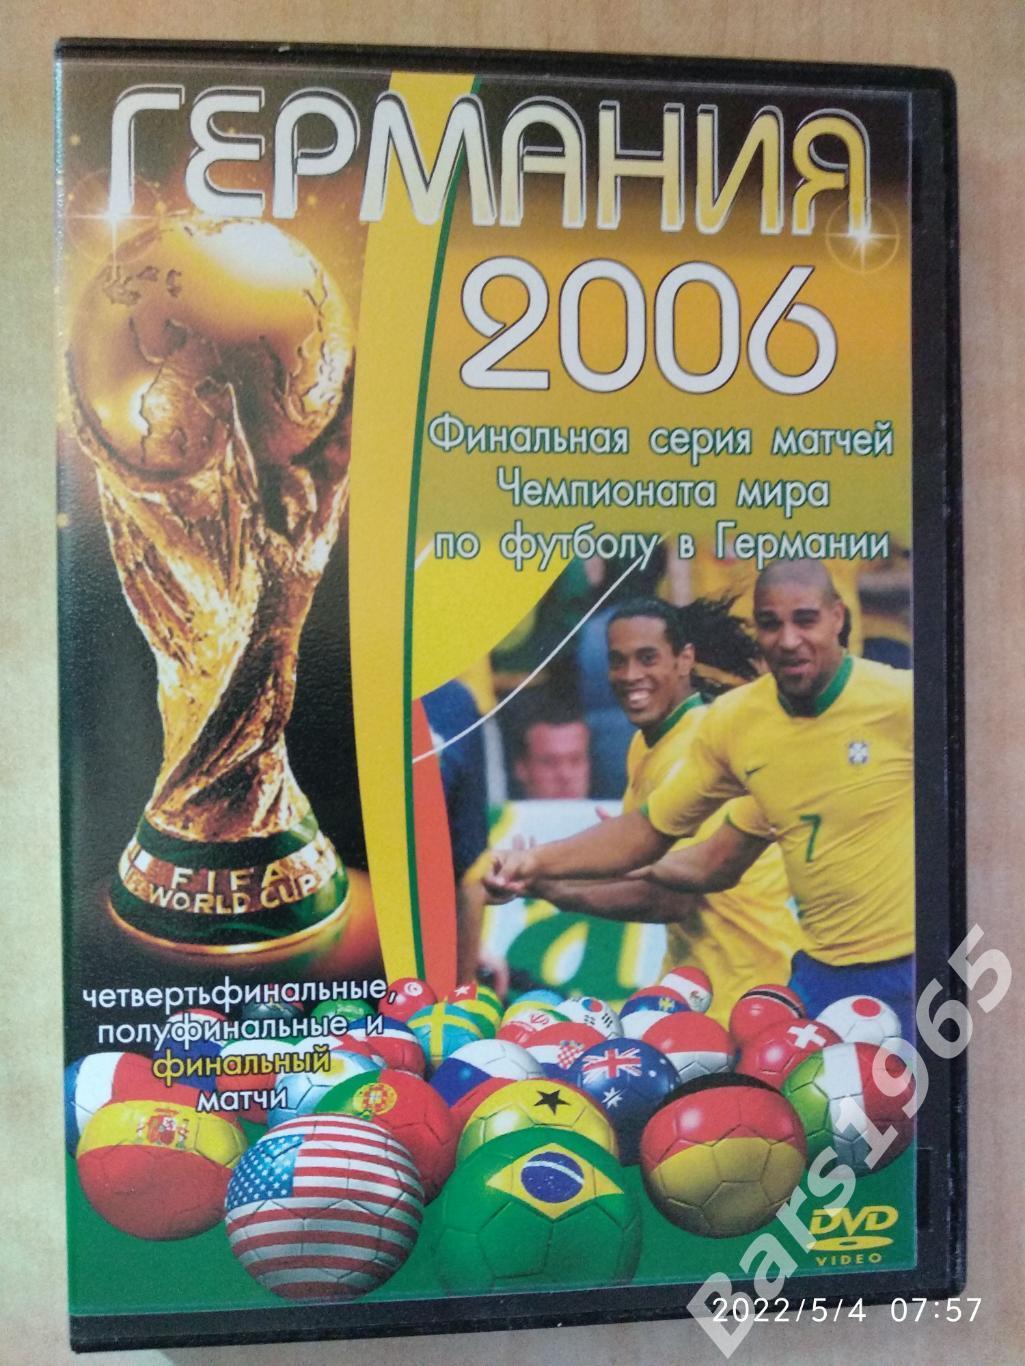 Германия 2006. Финальная серия матчей чемпионата мира DVD